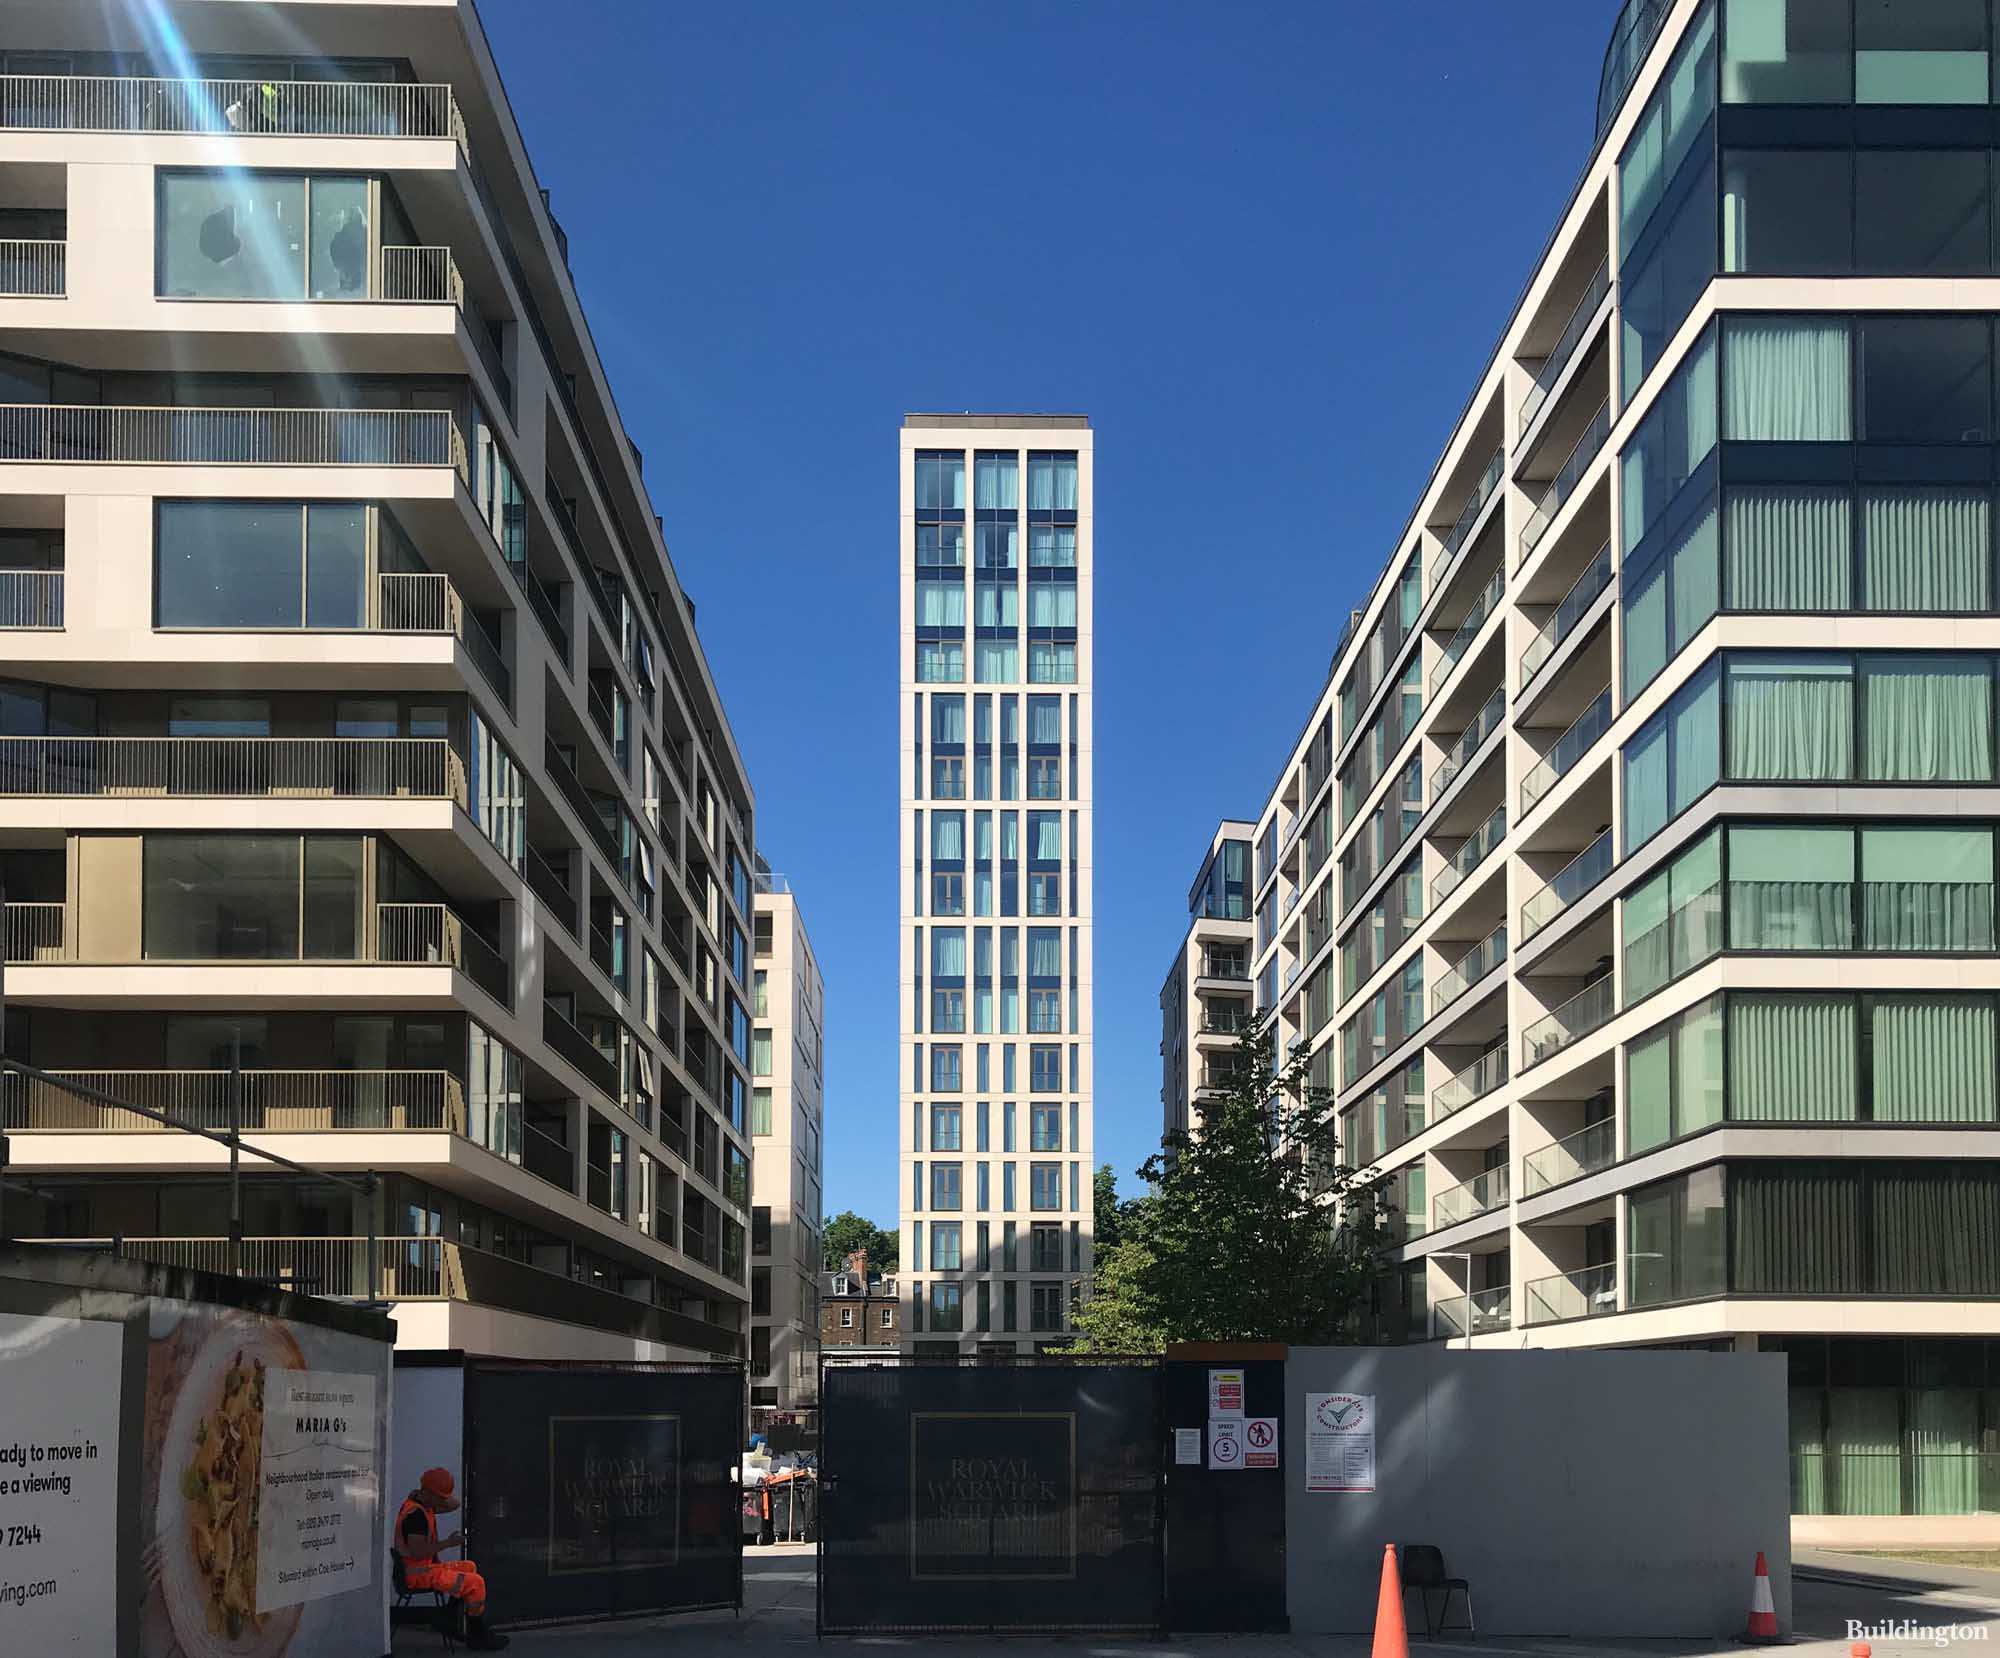 Royal Warwick Square development from Warwick Road in Kensington, London W14.